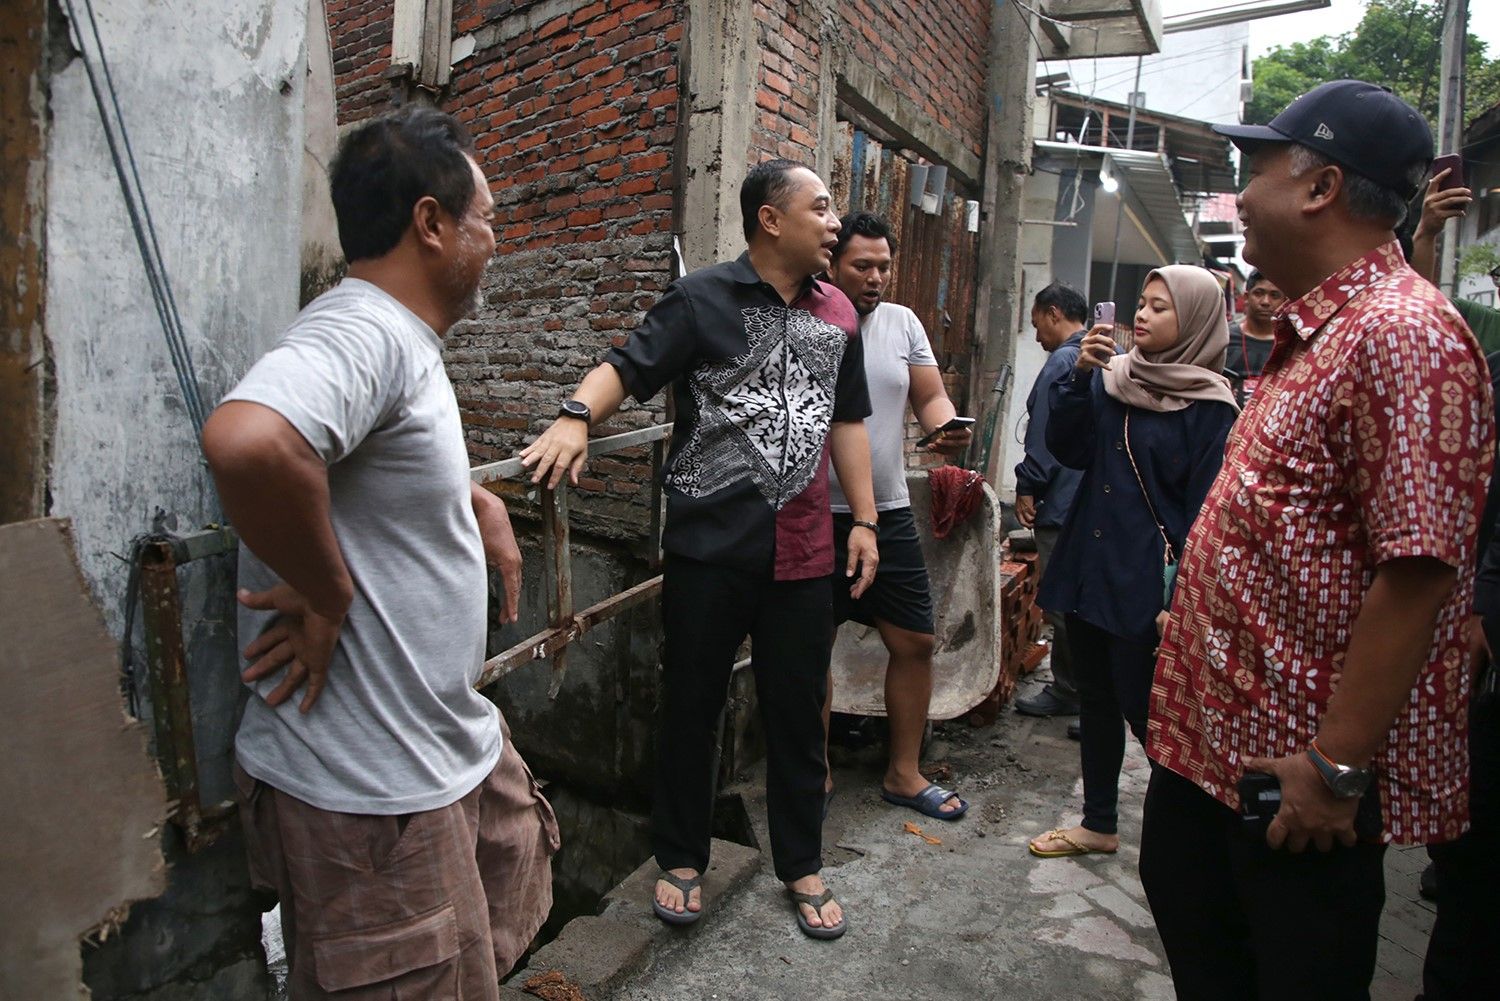 Wali Kota Surabaya, Eri Cahyadi merespon dan mengecek langsung perkampungan Dukuh Kupang yang viral karena banjir setinggi dada orang dewasa